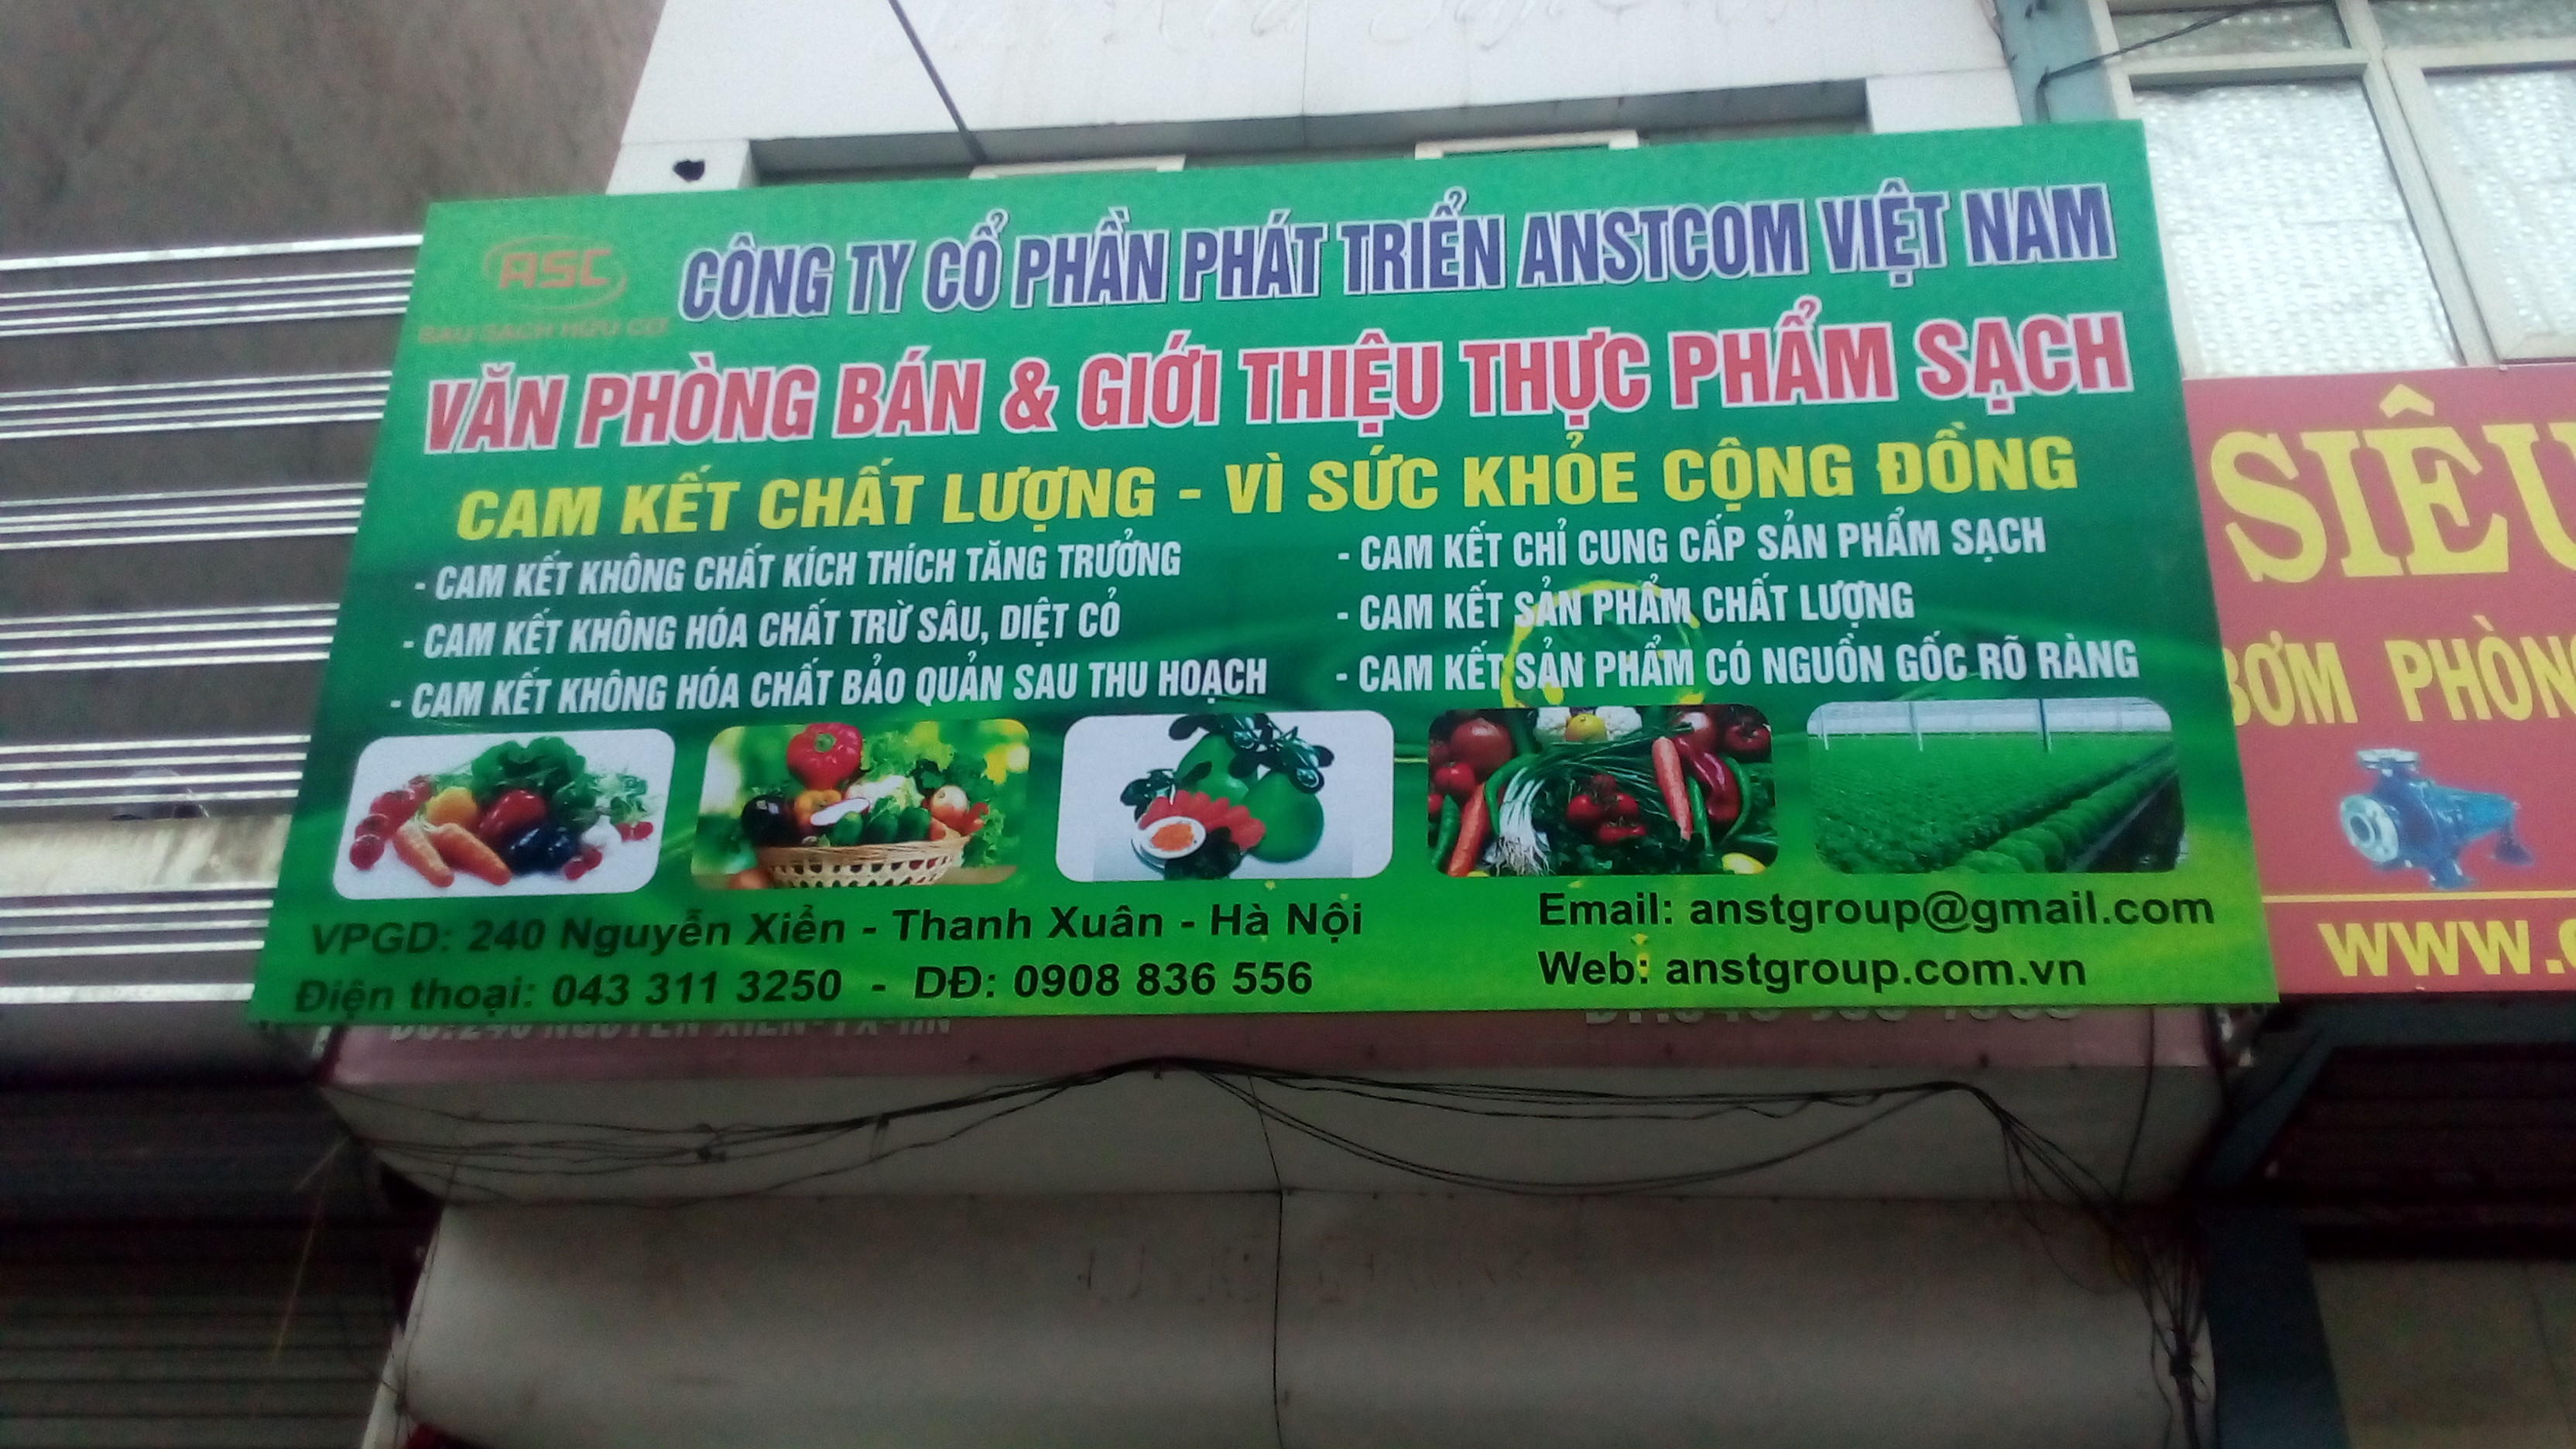 Lắp đặt kệ bày thực phẩm sạch cho công ty Anstcom Việt Nam 